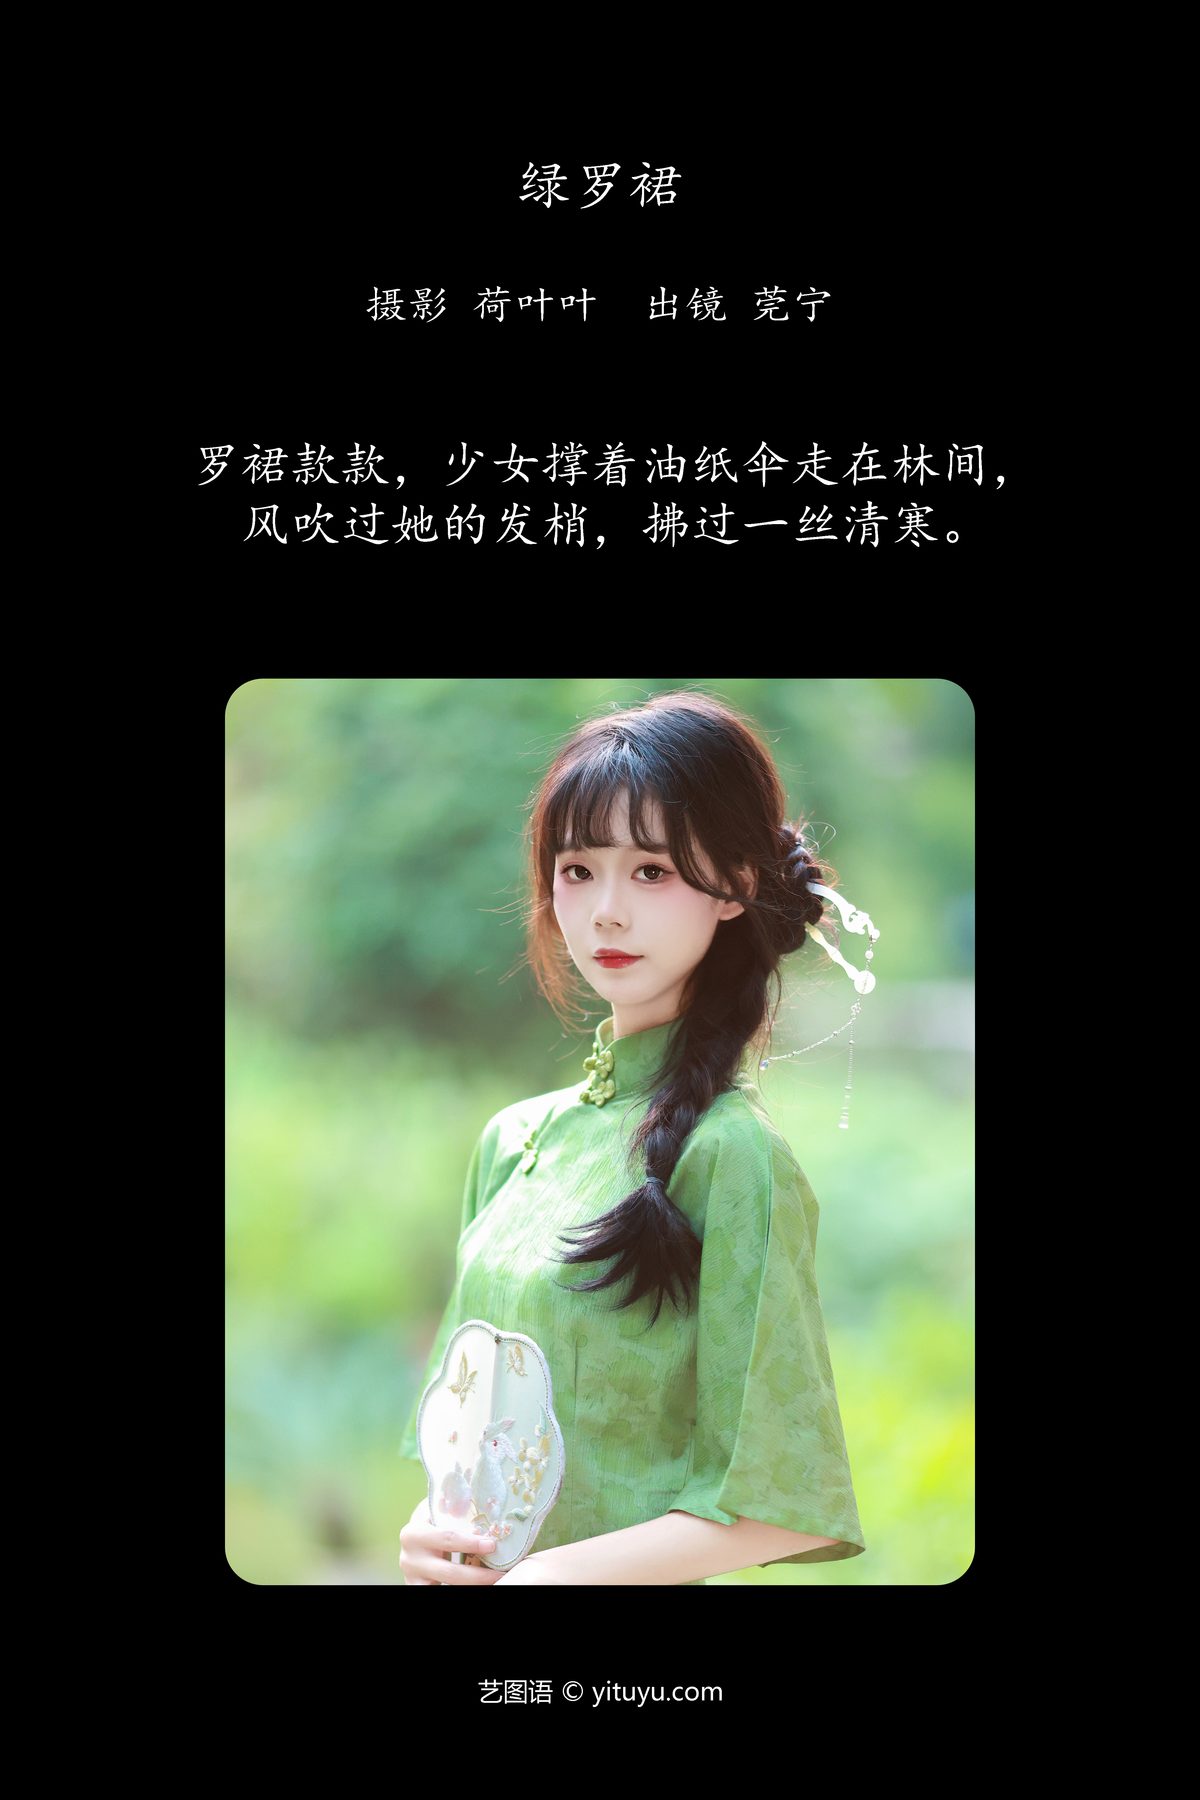 YiTuYu艺图语 Vol 5866 Guan Ning 0002 4714883942.jpg